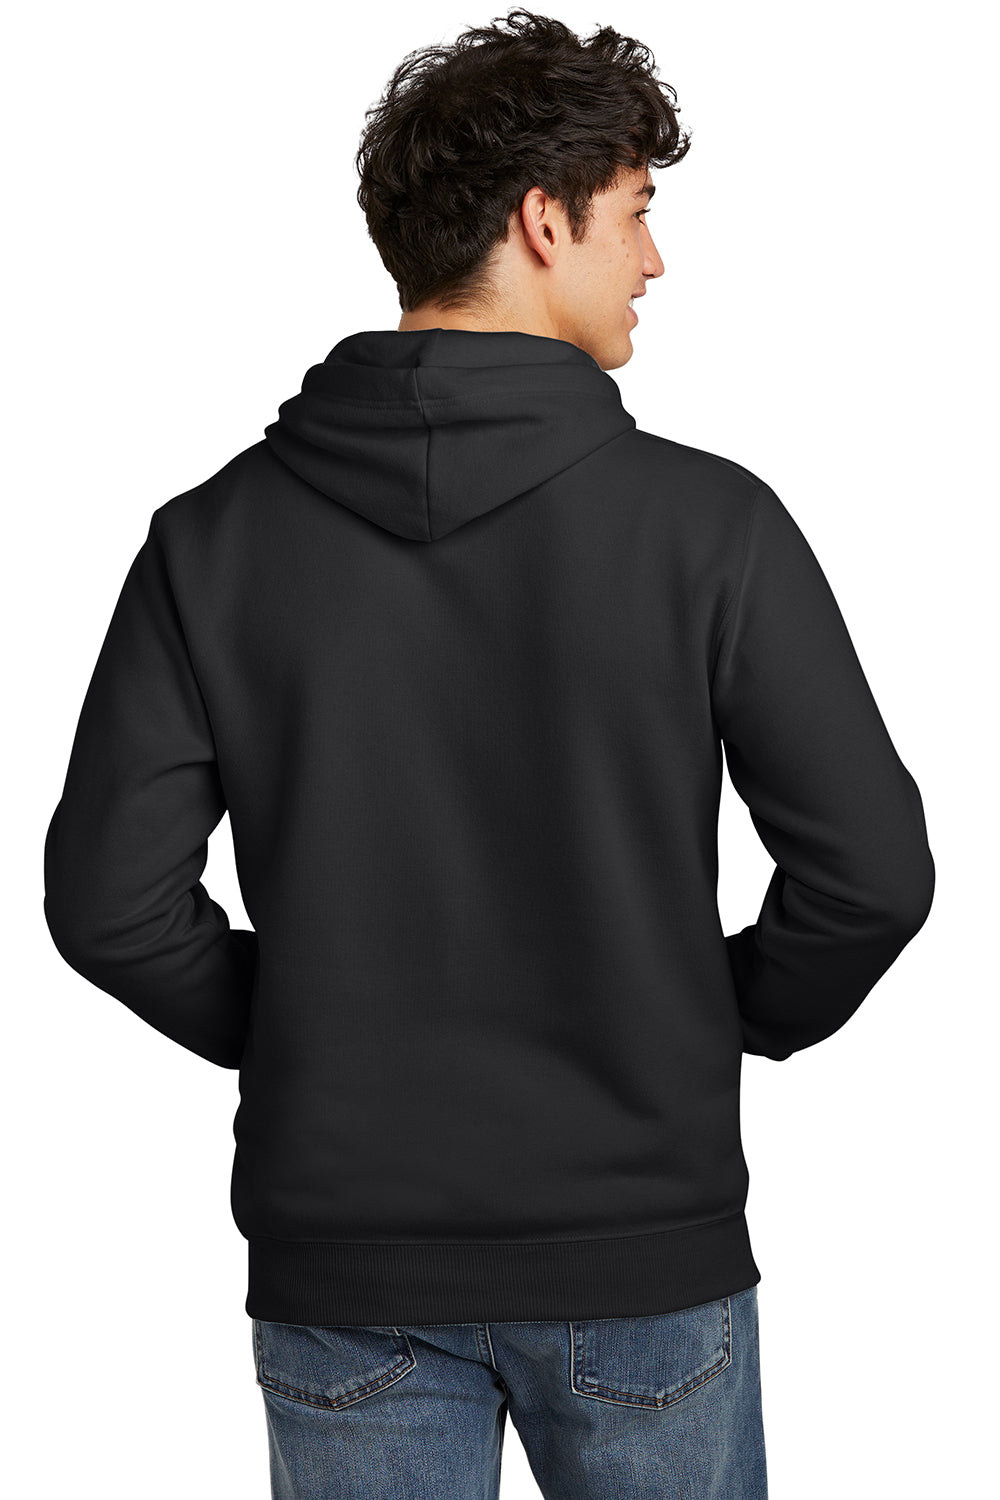 Jerzees 700M Mens Eco Premium Hooded Sweatshirt Hoodie Ink Black Back